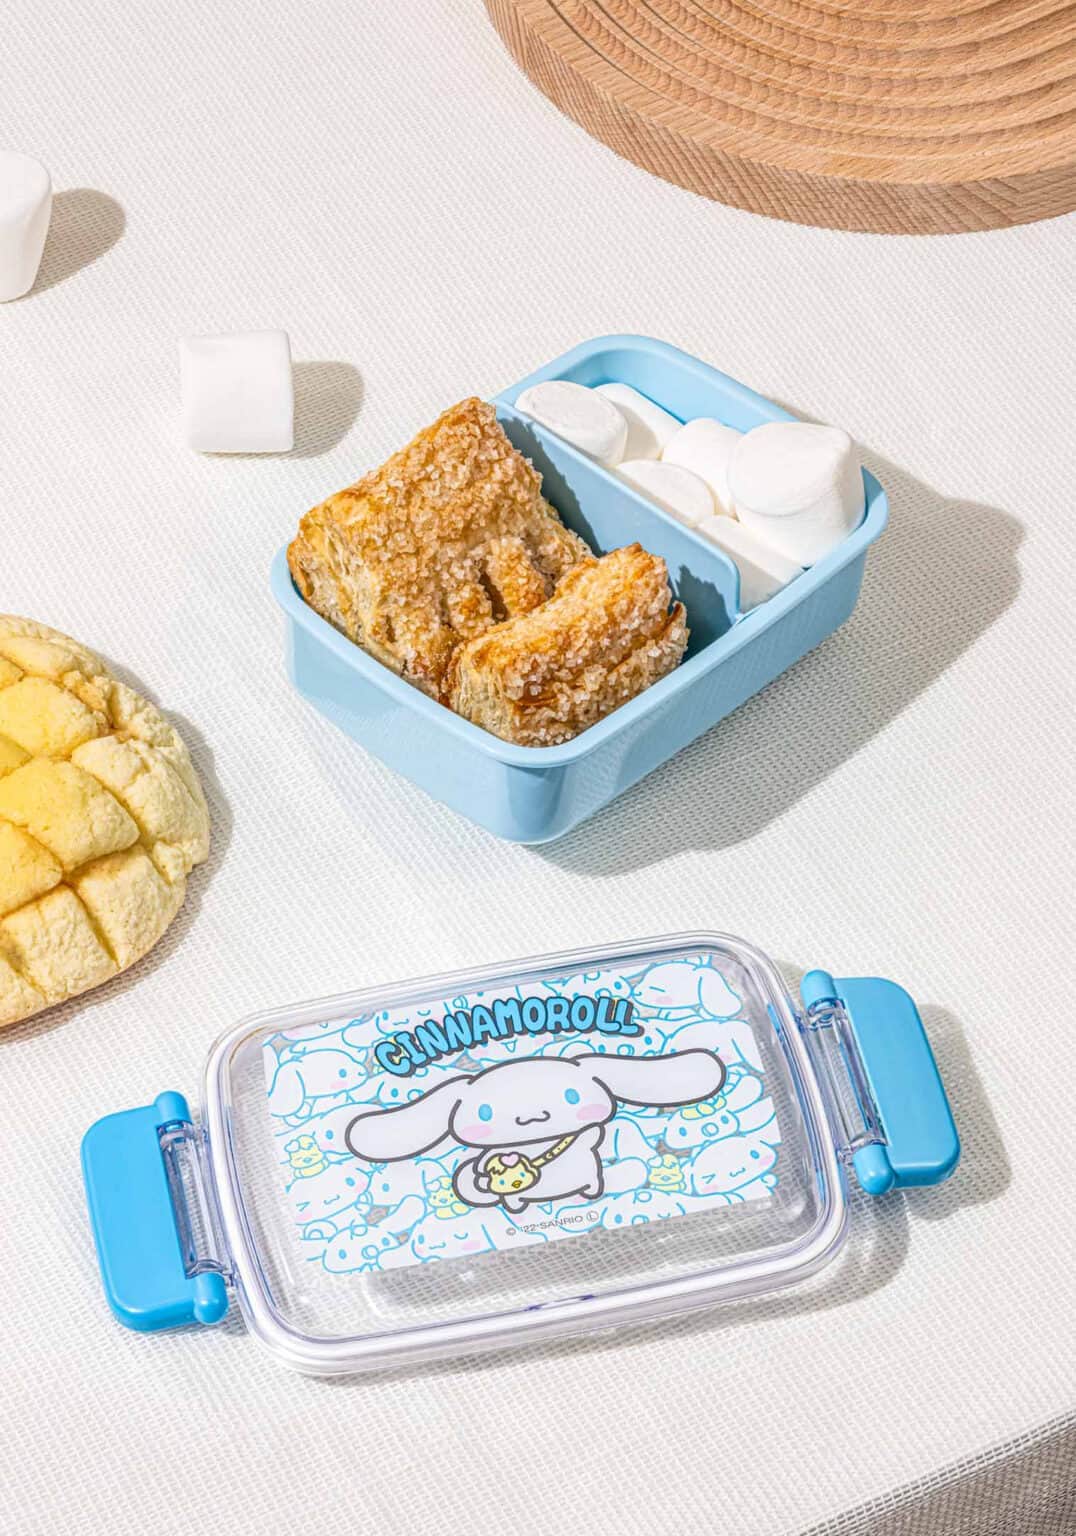 Lunch Box Enfant avec Compartiments, Bento Box Enfant, Lunch Box